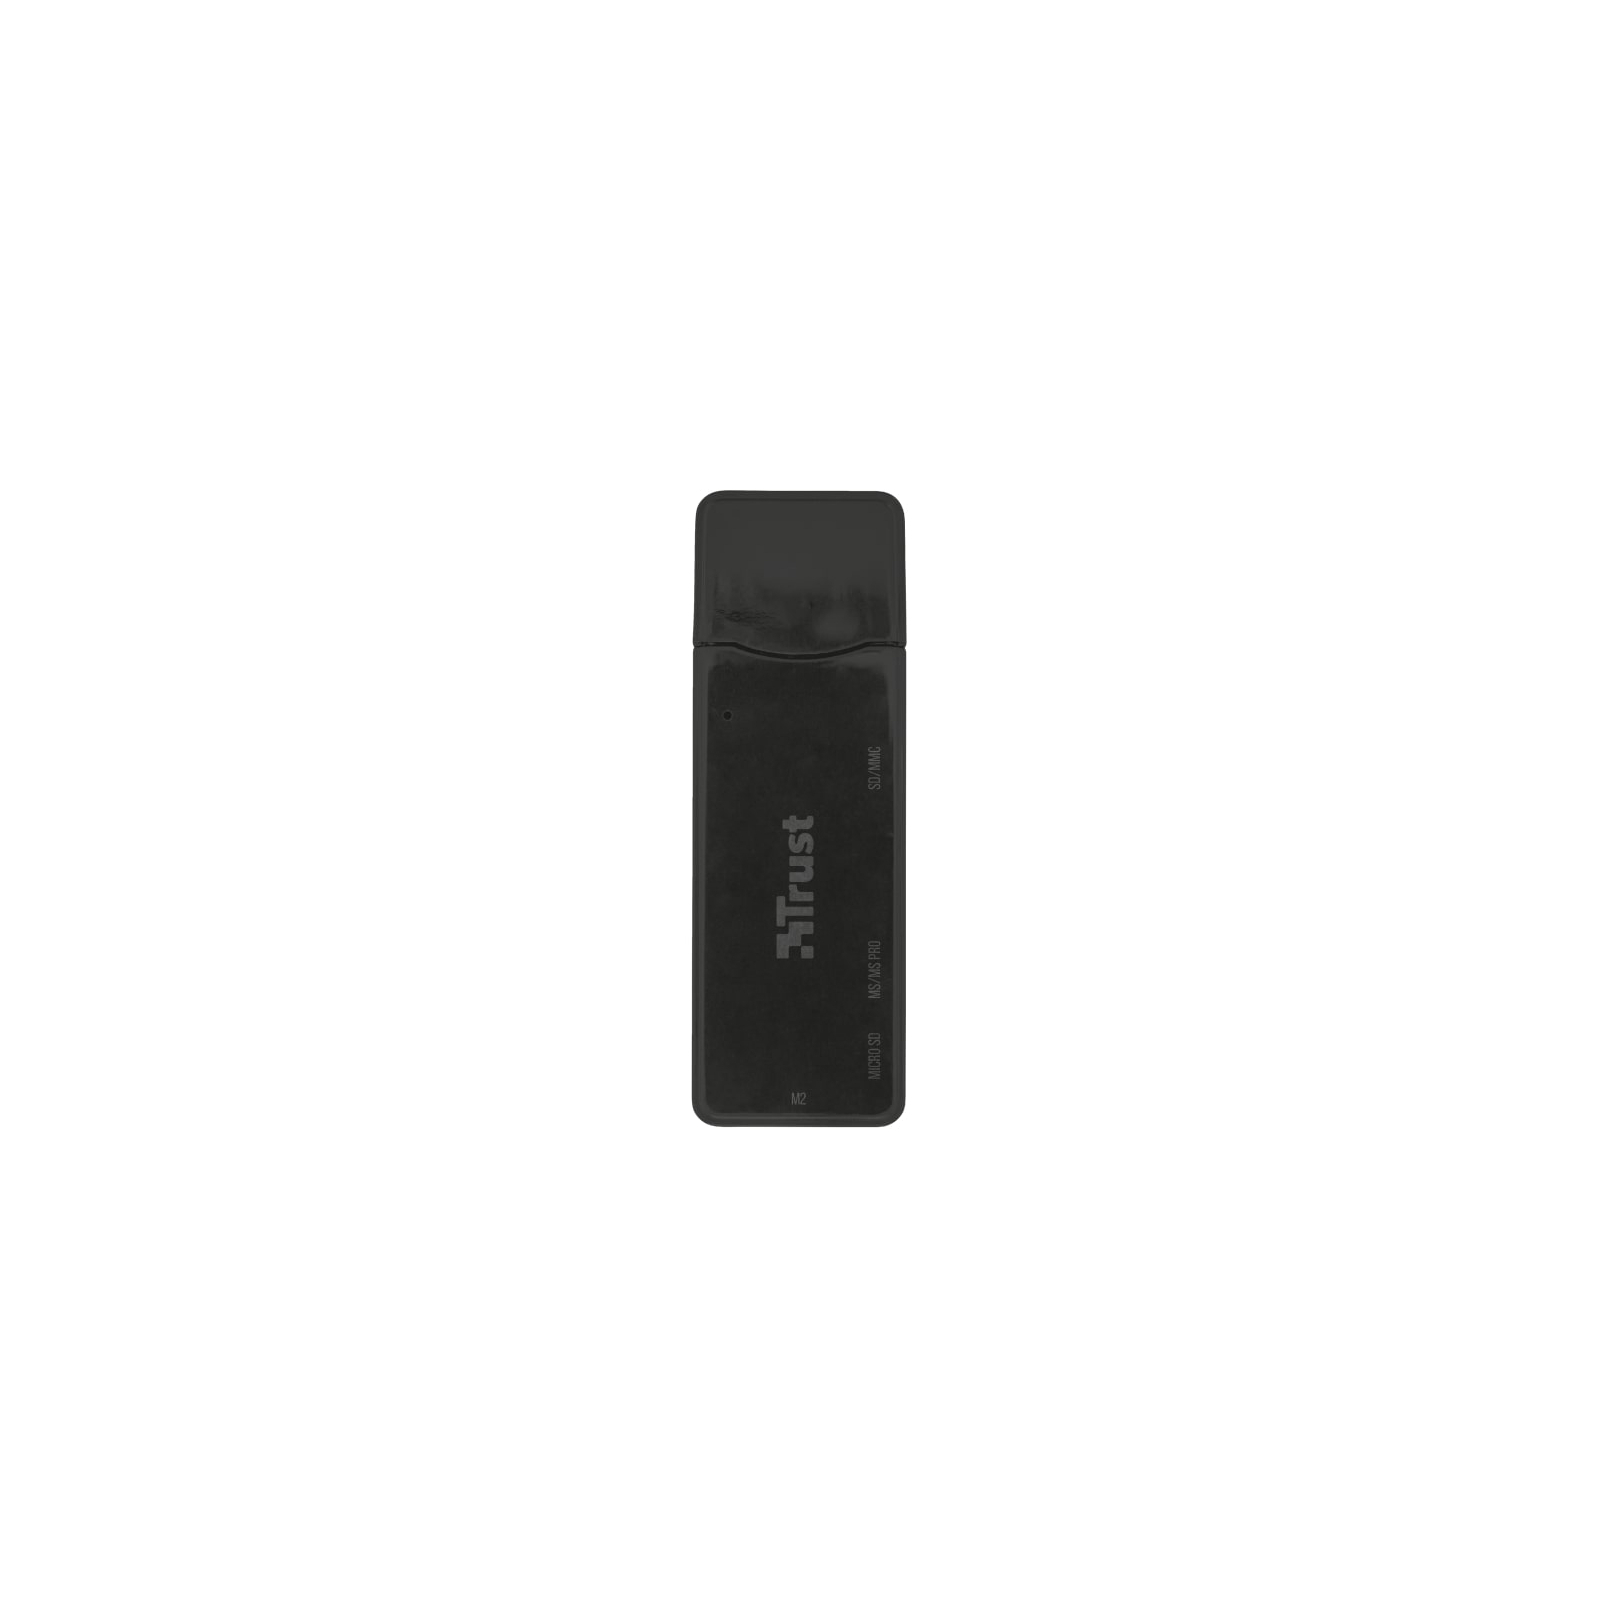 Считыватель флеш-карт Trust Nanga USB 3.1 (21935)